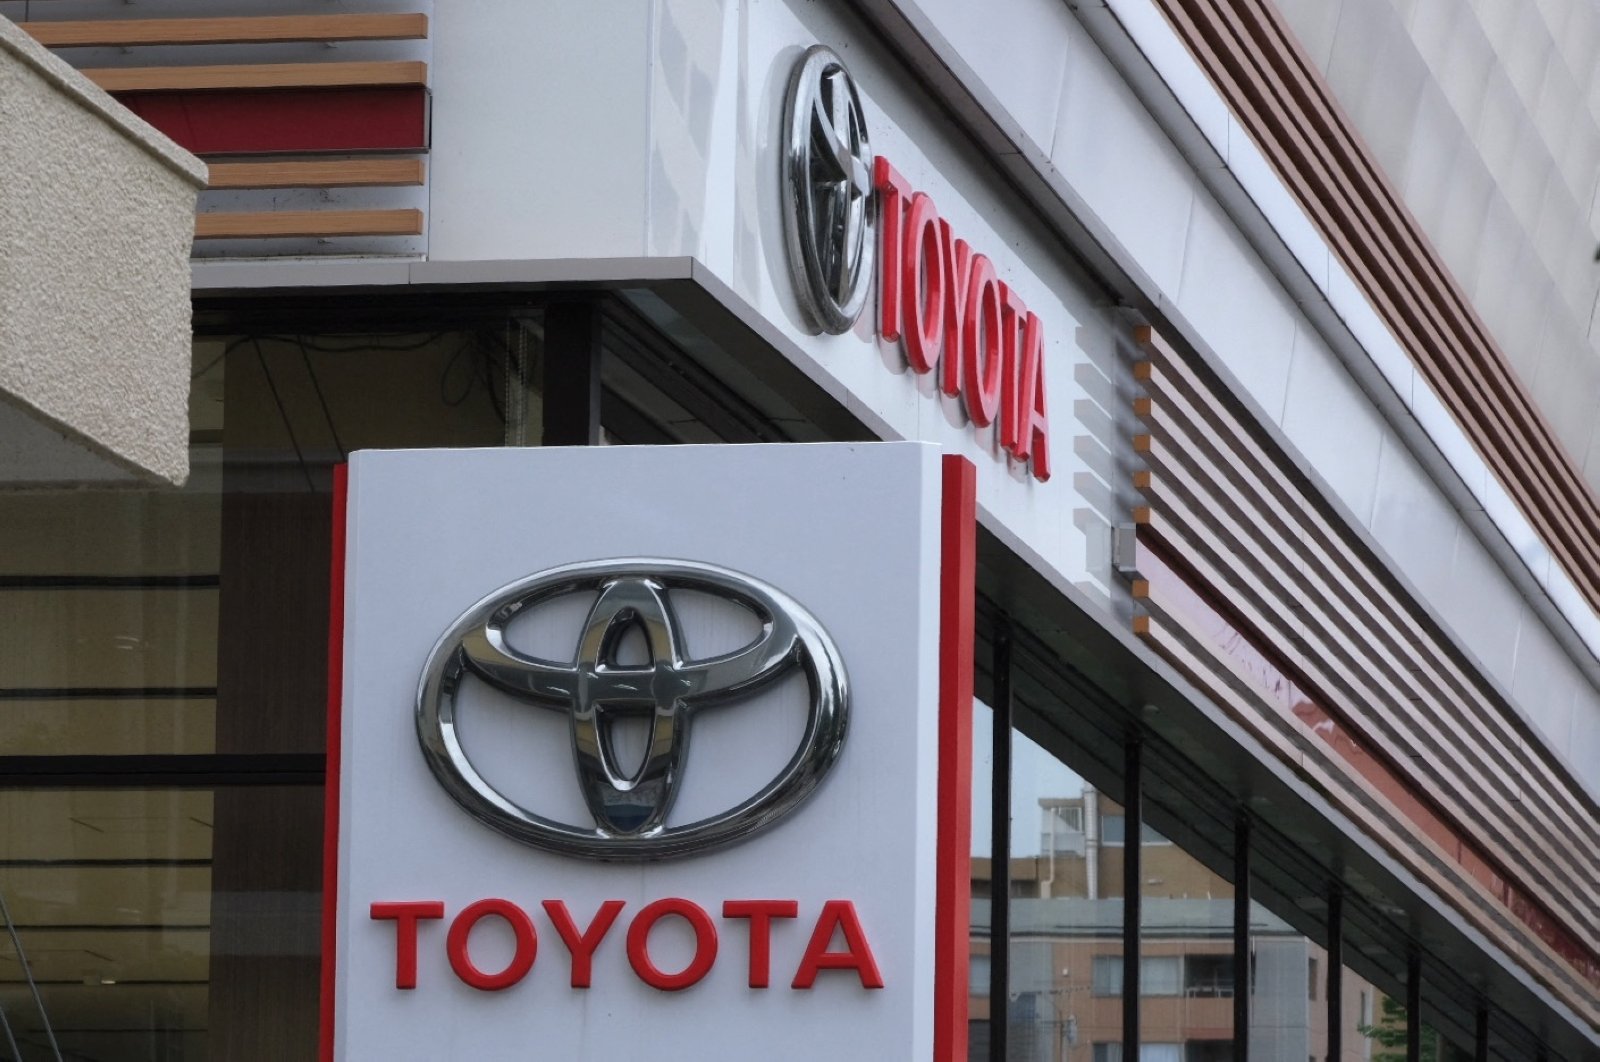 Keuntungan Toyota turun di Q2 karena kekurangan chip membuat pelanggan menunggu